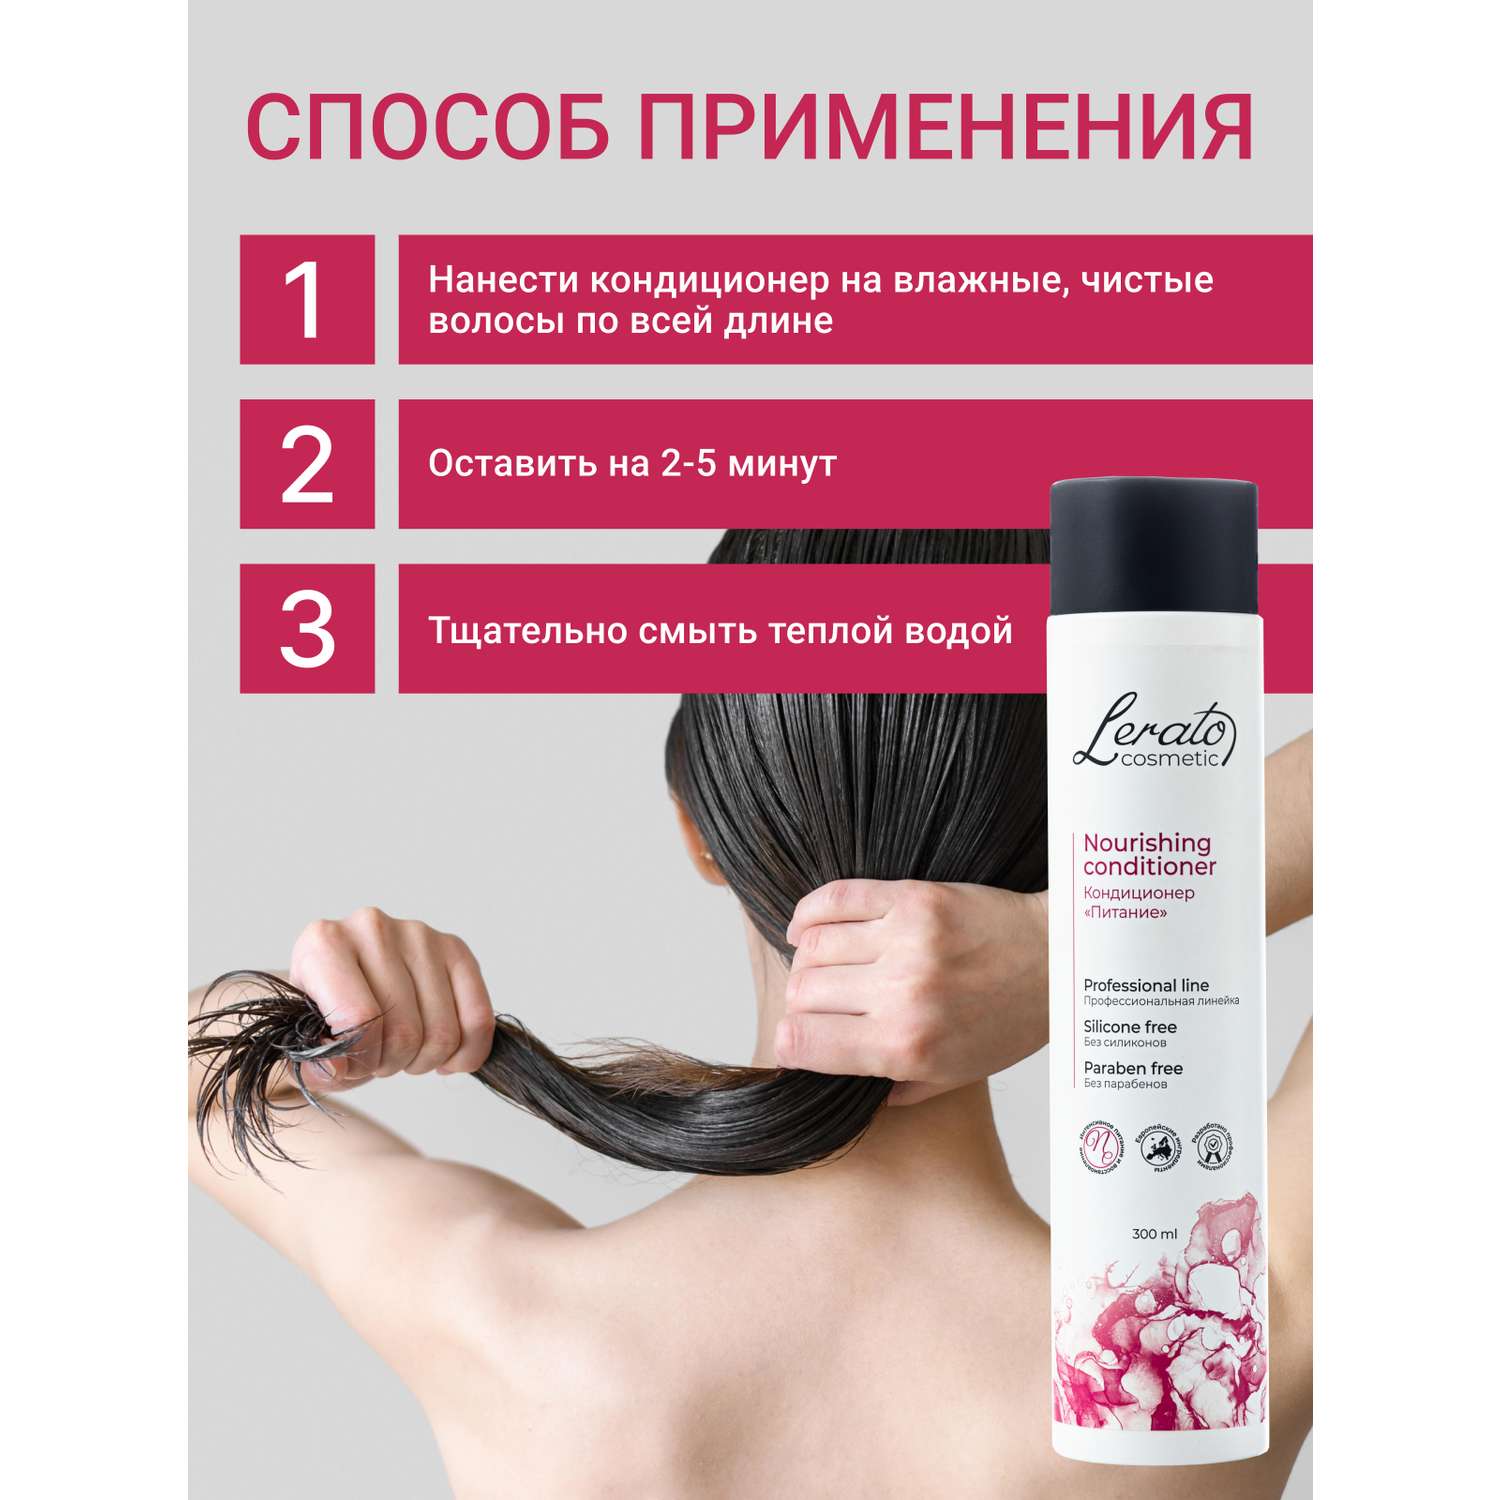 Кондиционер Lerato Cosmetic Питательный для сухих поврежденных и окрашенных волос 300 мл - фото 4